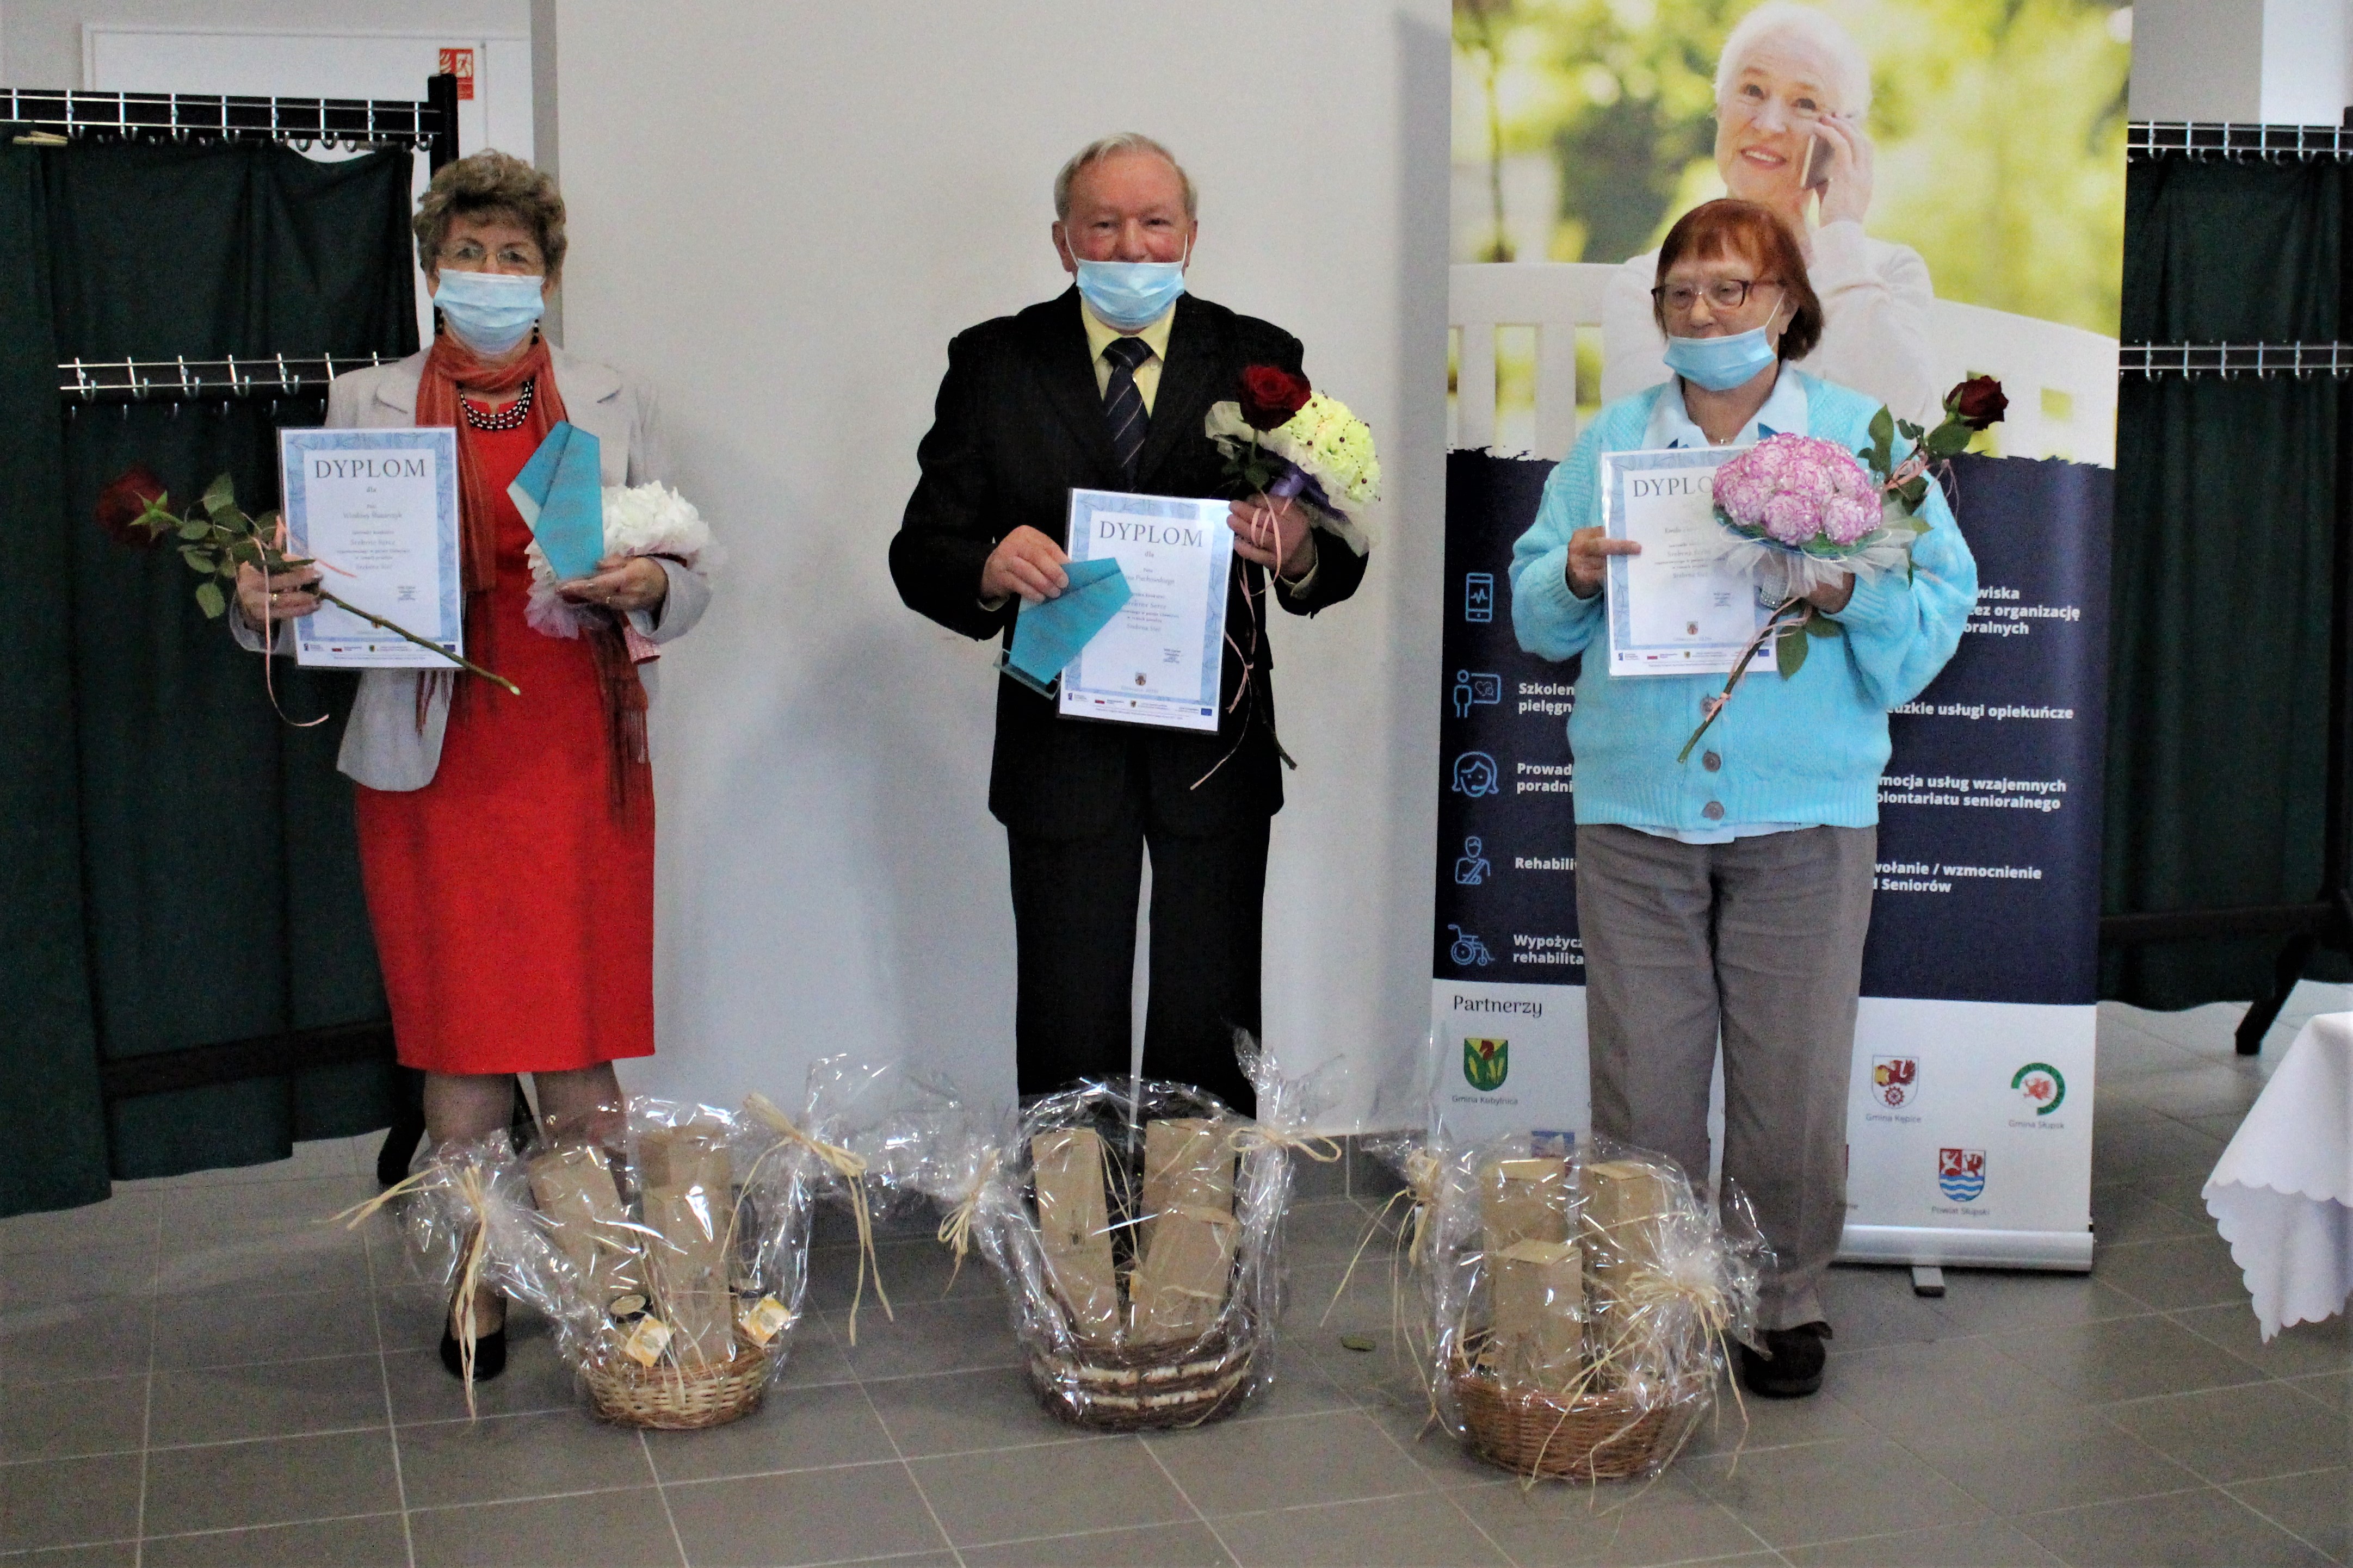 Troje laureatów konkursu z dyplomami, bukietami kwiatów oraz nagrodami.